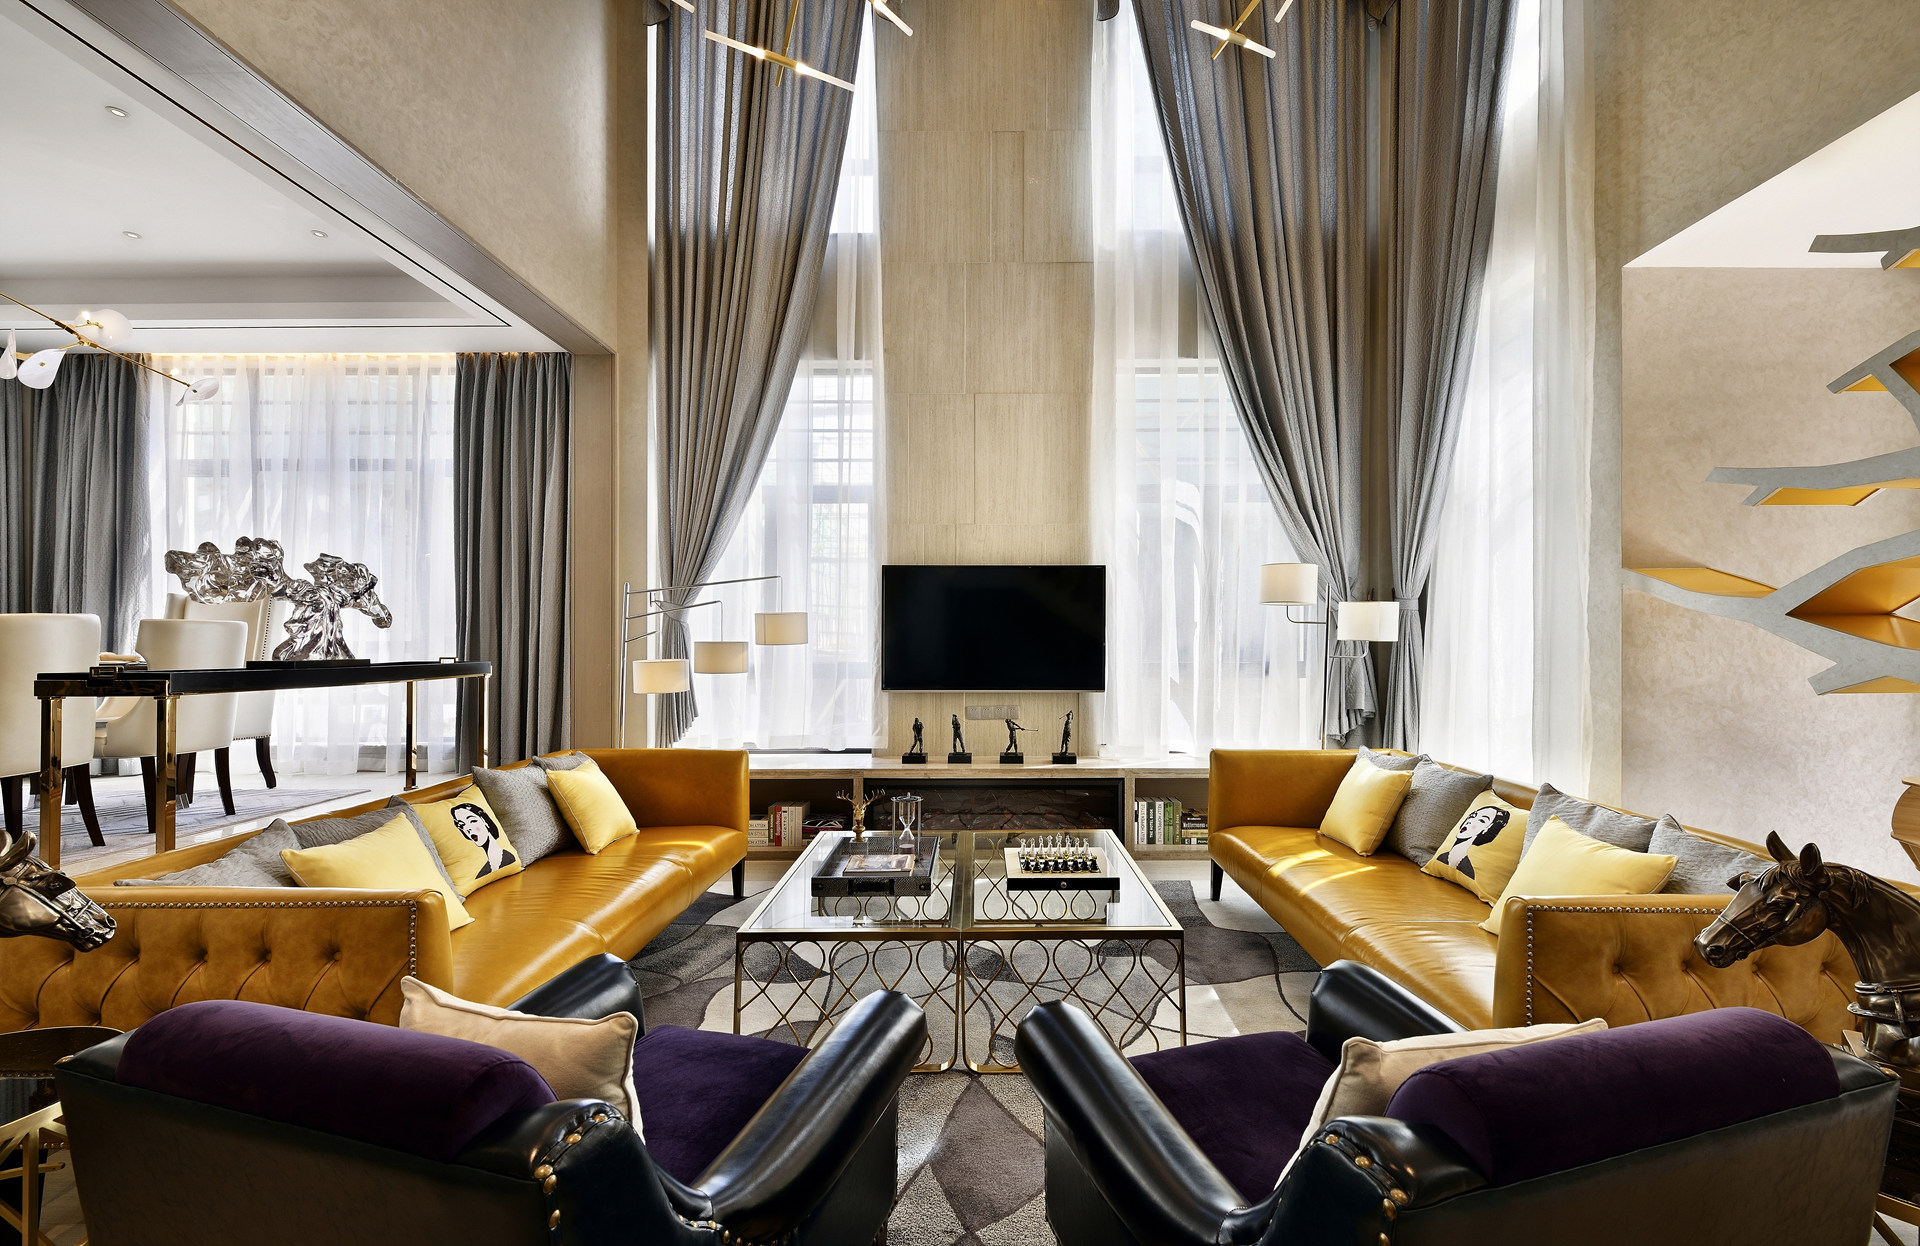 客厅的设计色彩比较丰富，橘色皮质沙发成为空间焦点，表现出轻奢时尚的氛围特点。